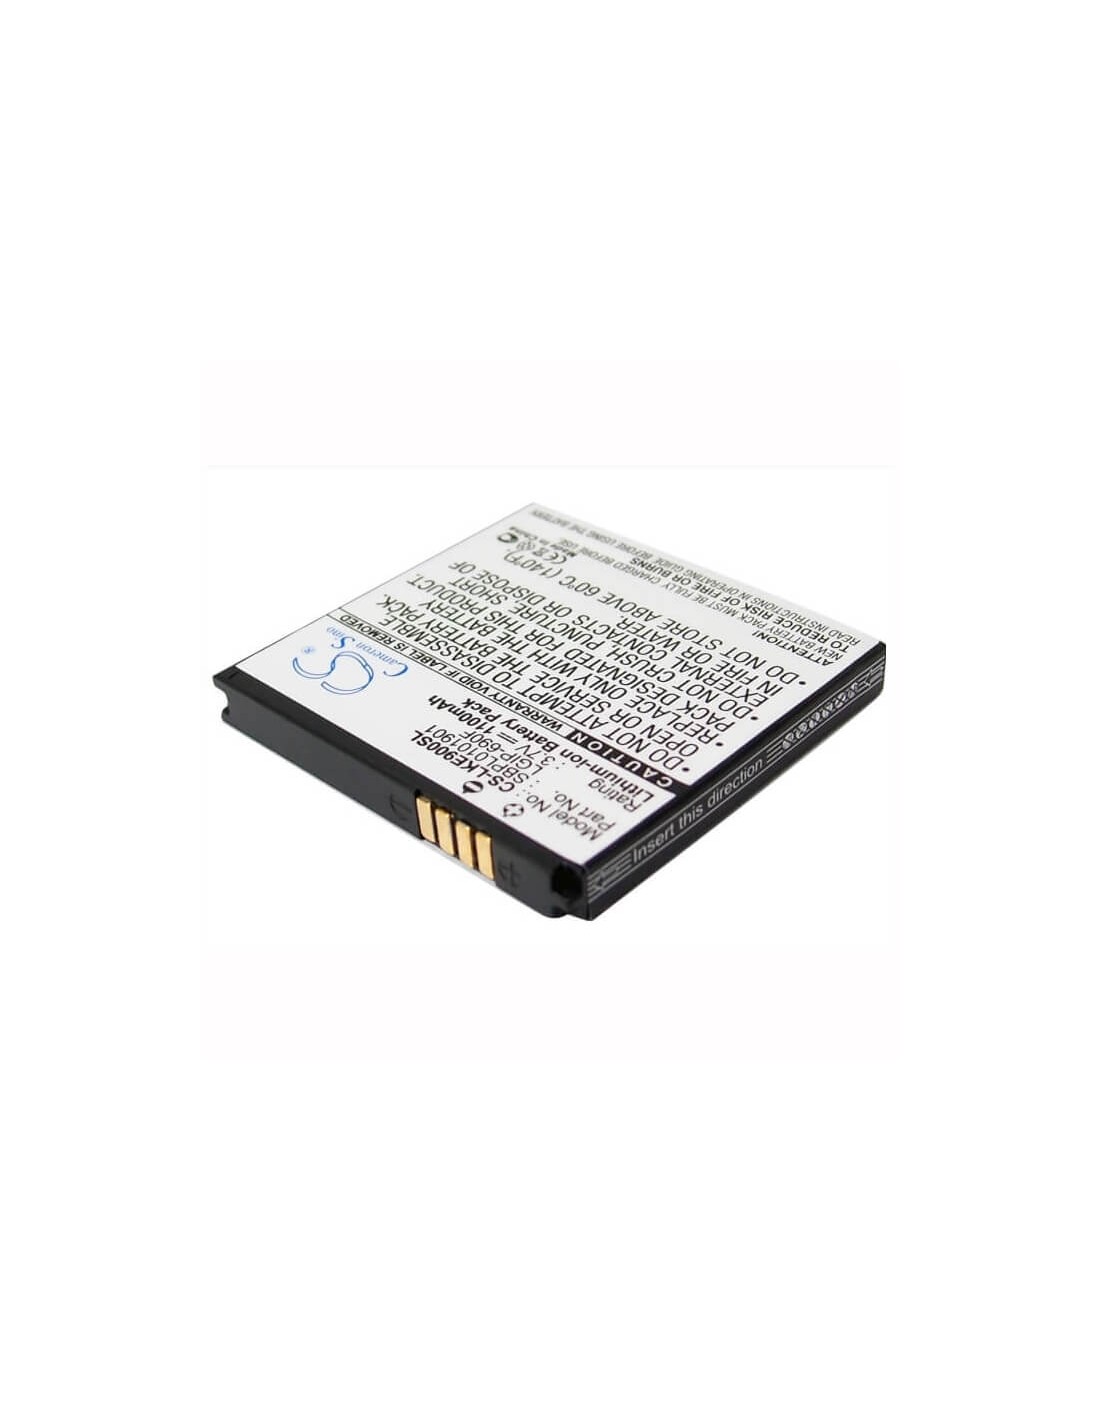 Battery for LG Optimus 7, E900, C900 3.7V, 1100mAh - 4.07Wh